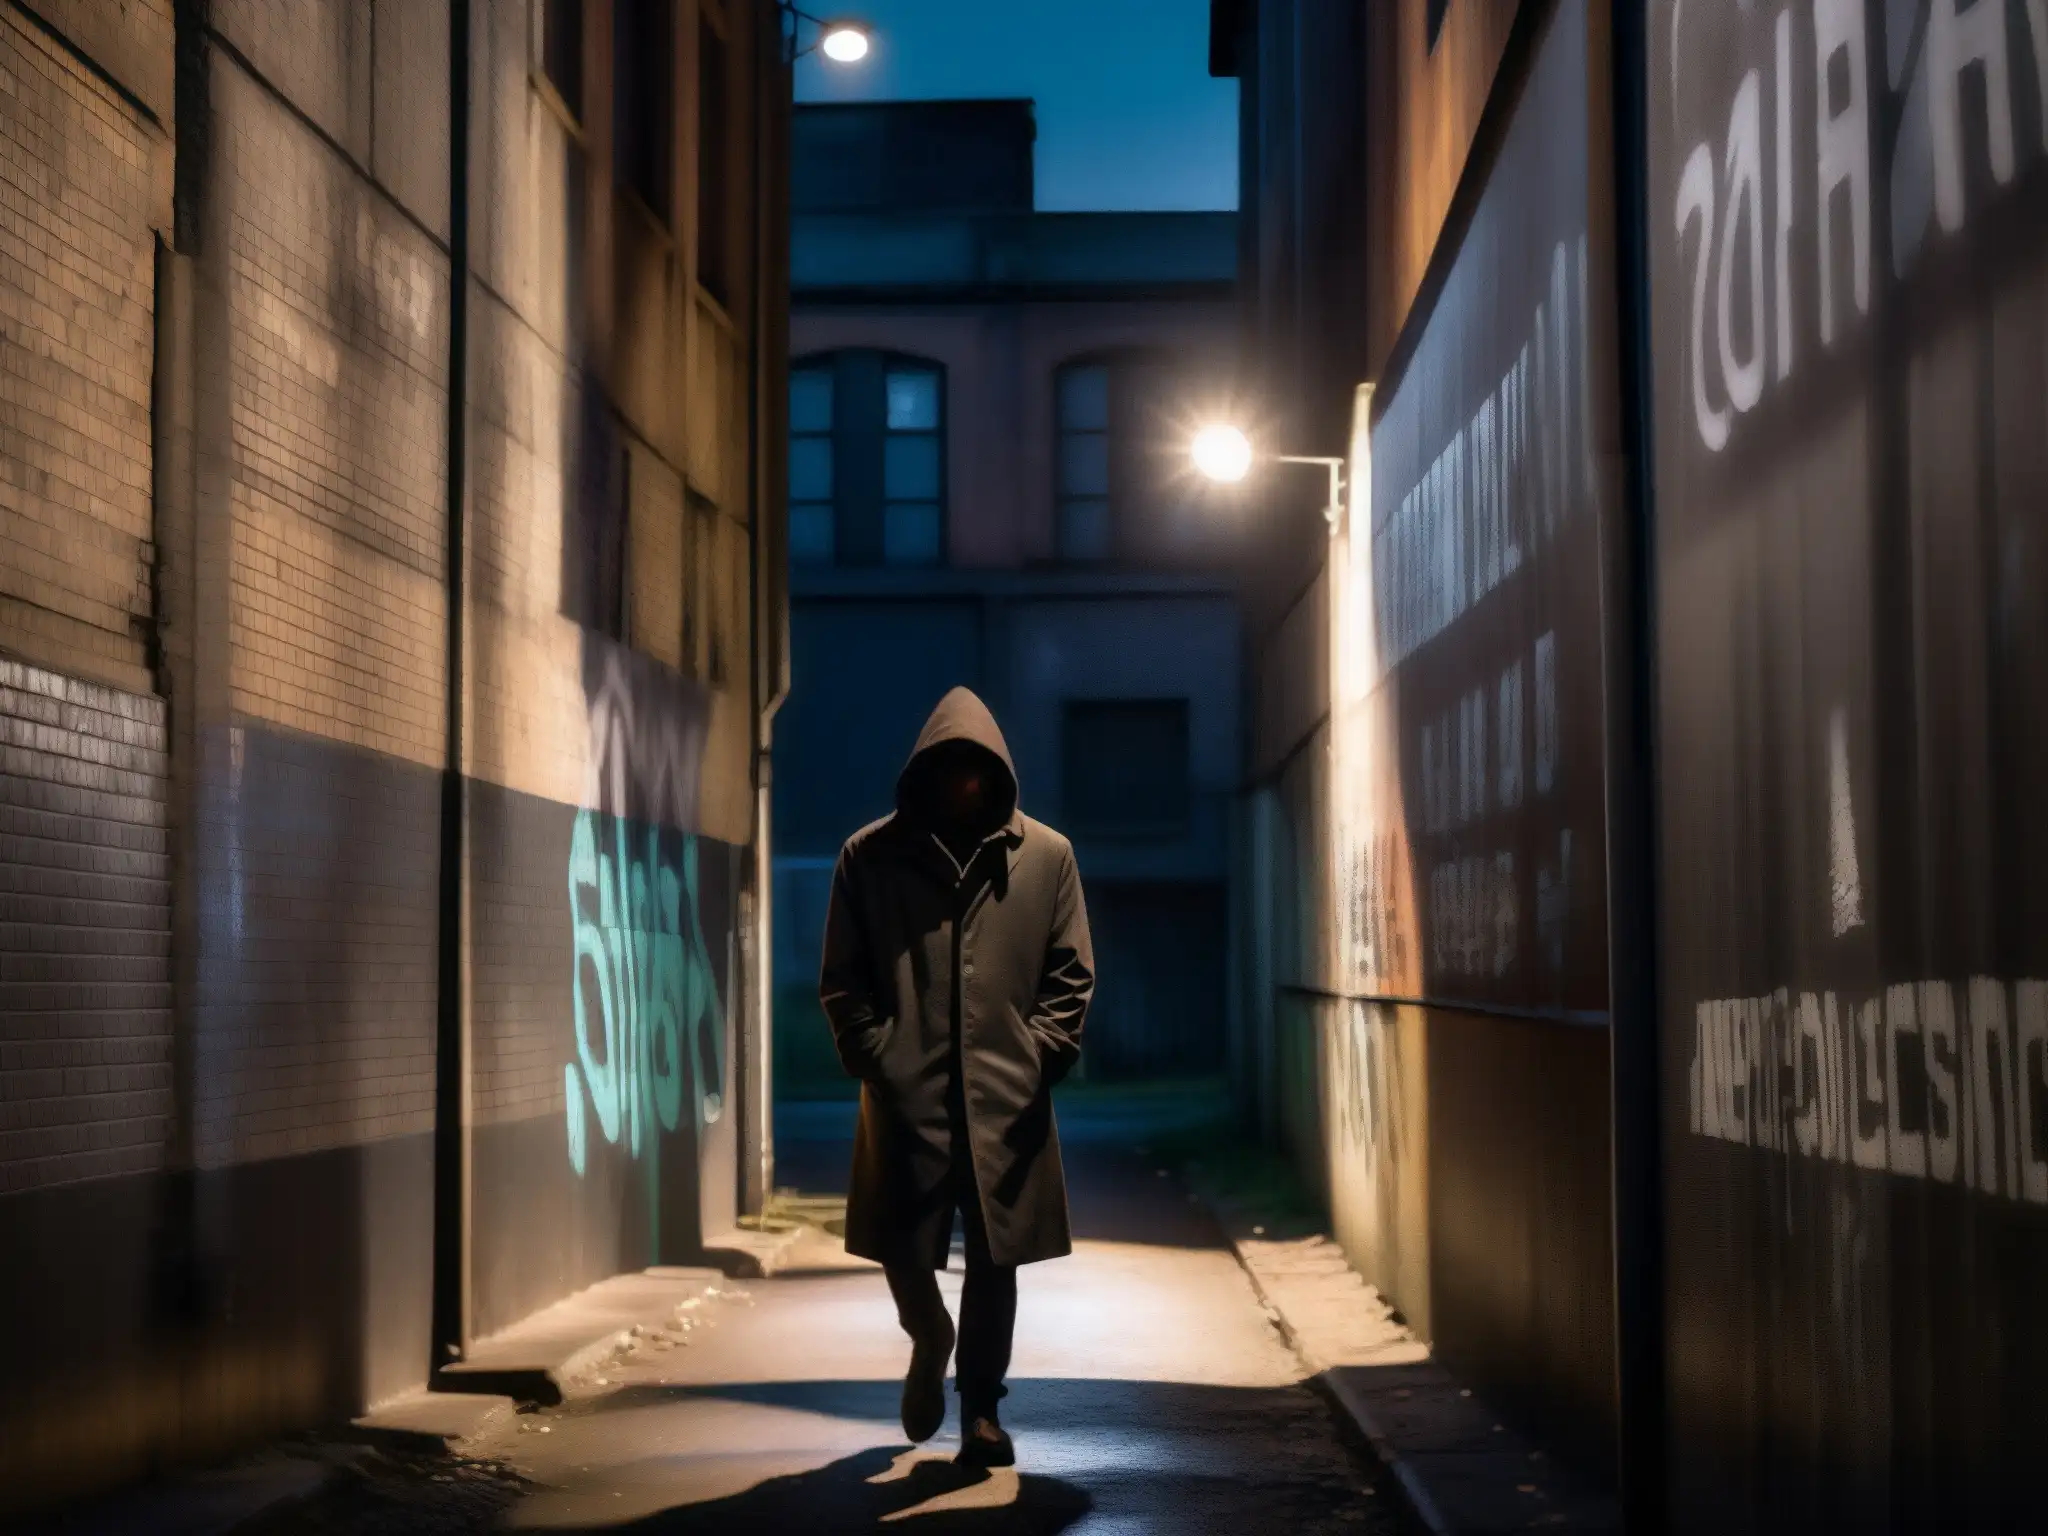 Un callejón oscuro con grafitis, luces parpadeantes y una figura misteriosa, reflejando fobias sociales y leyendas urbanas